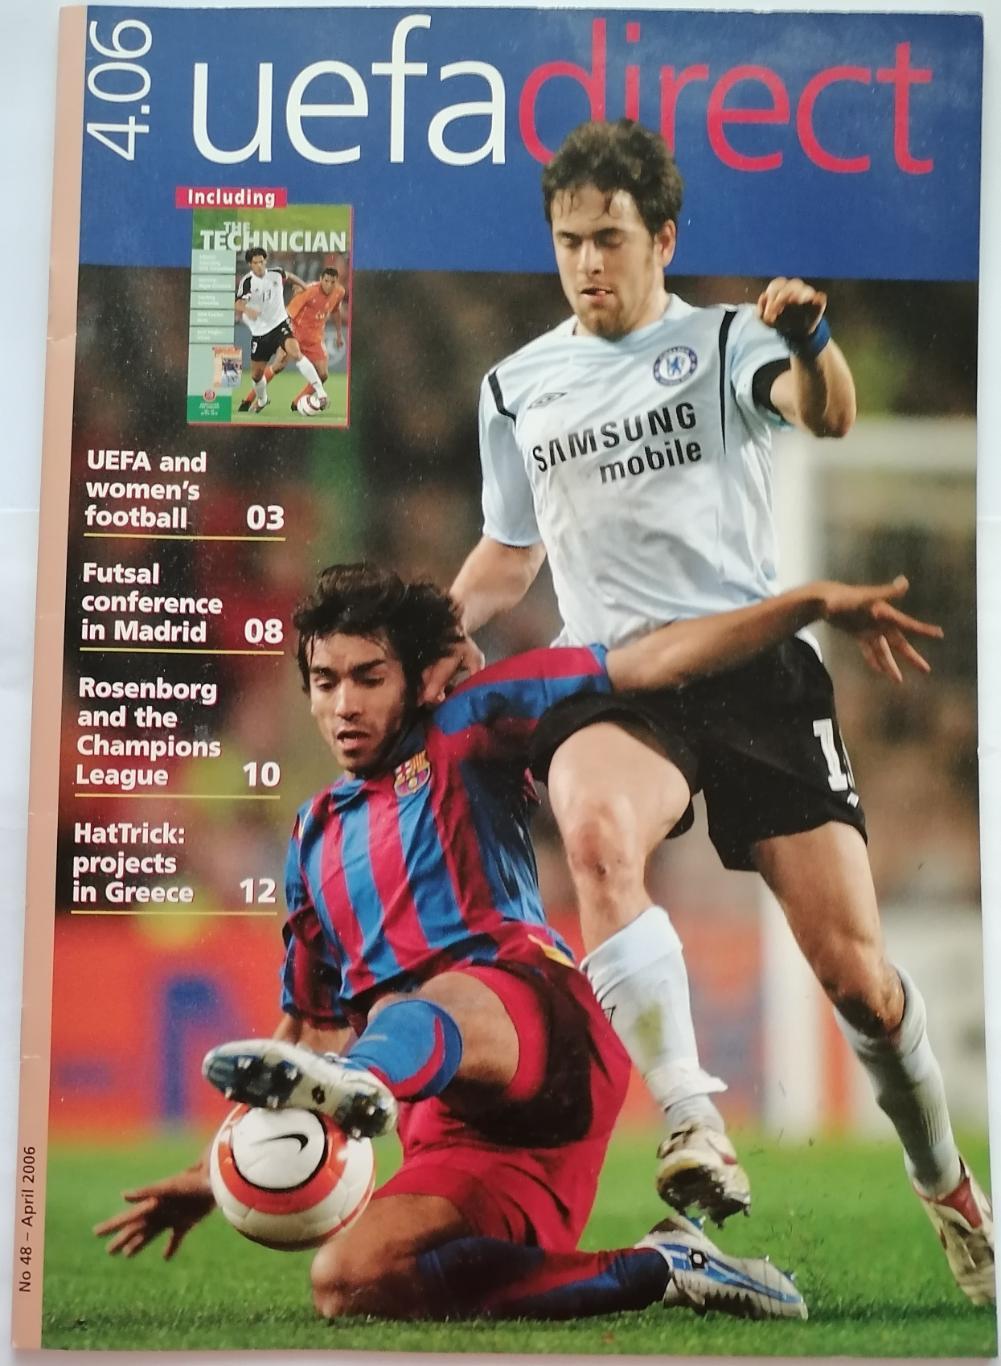 Журнал UEFA DIRECT 2006 АПРЕЛЬ КОЛОСКОВ